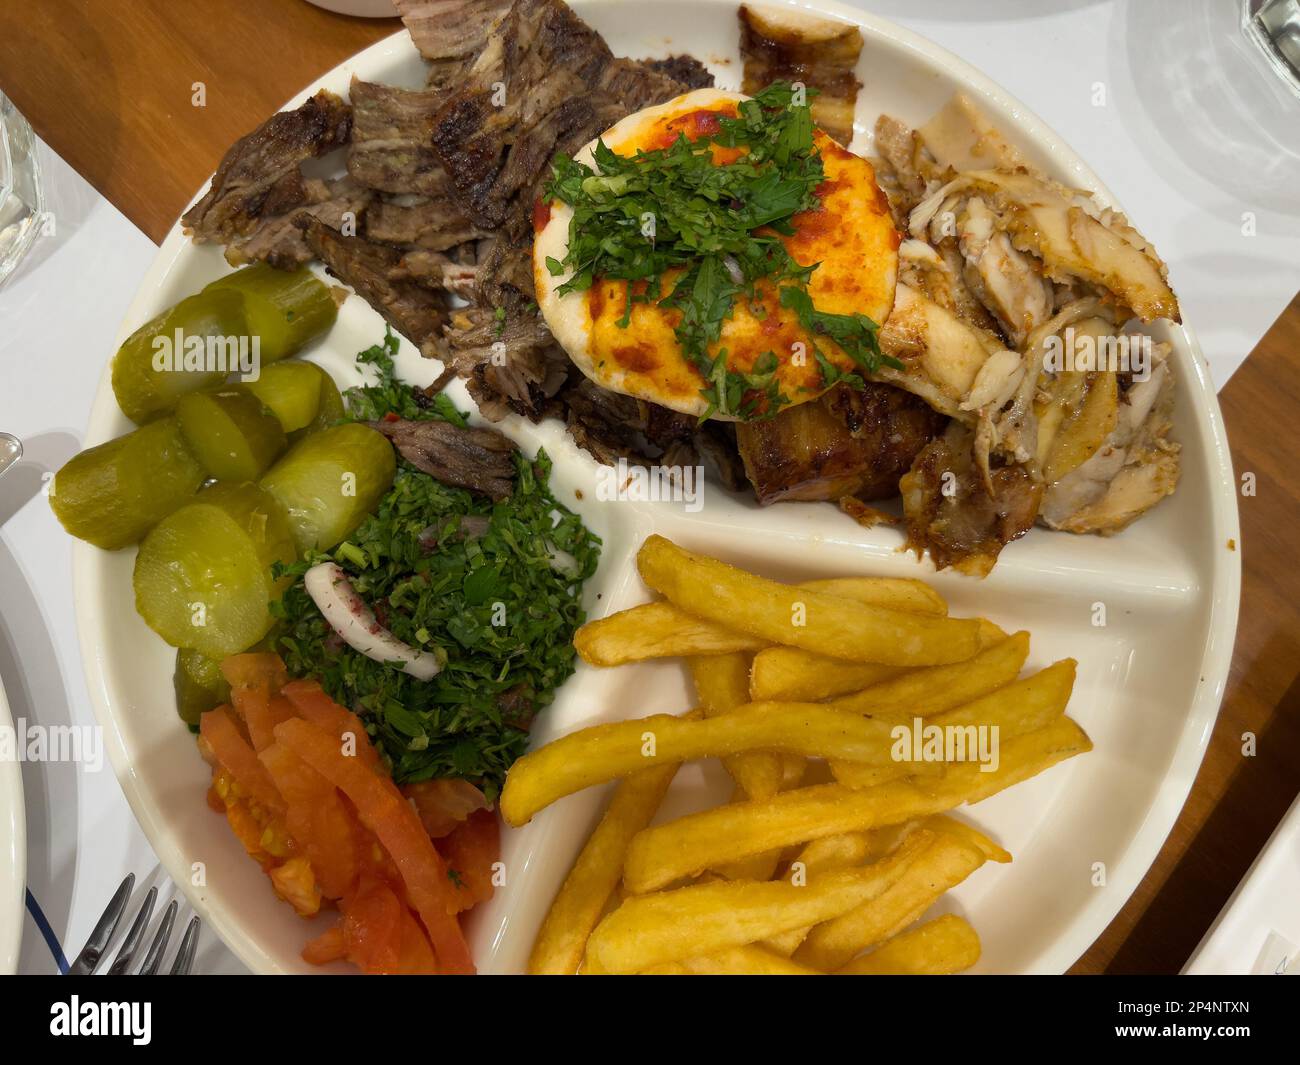 vue de haut en bas d'une assiette de shawarma prêt à manger, servi dans une assiette blanche et placé sur une table en bois. Concept de cuisine arabe ou moyen-orientale. Banque D'Images